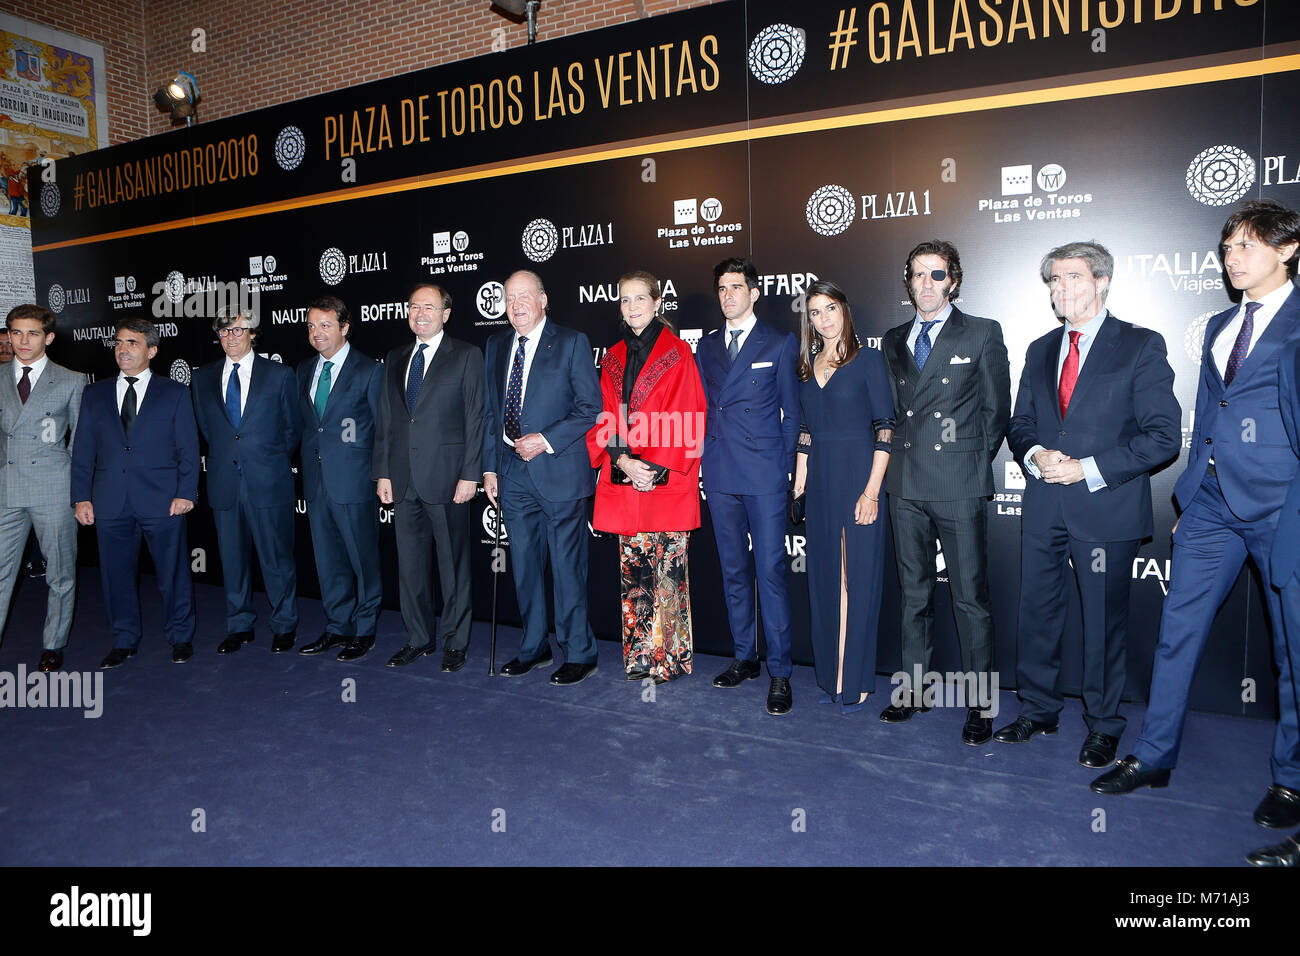 Le Roi Juan Carlos I et de l'infante Elena d'Espagne au cours du Gala de présentation des cartels de l'Feria de San Isidro 2018' de Madrid 07/03/2018 Credit : Gtres información más Comuniación sur ligne, S.L./Alamy Live News Banque D'Images